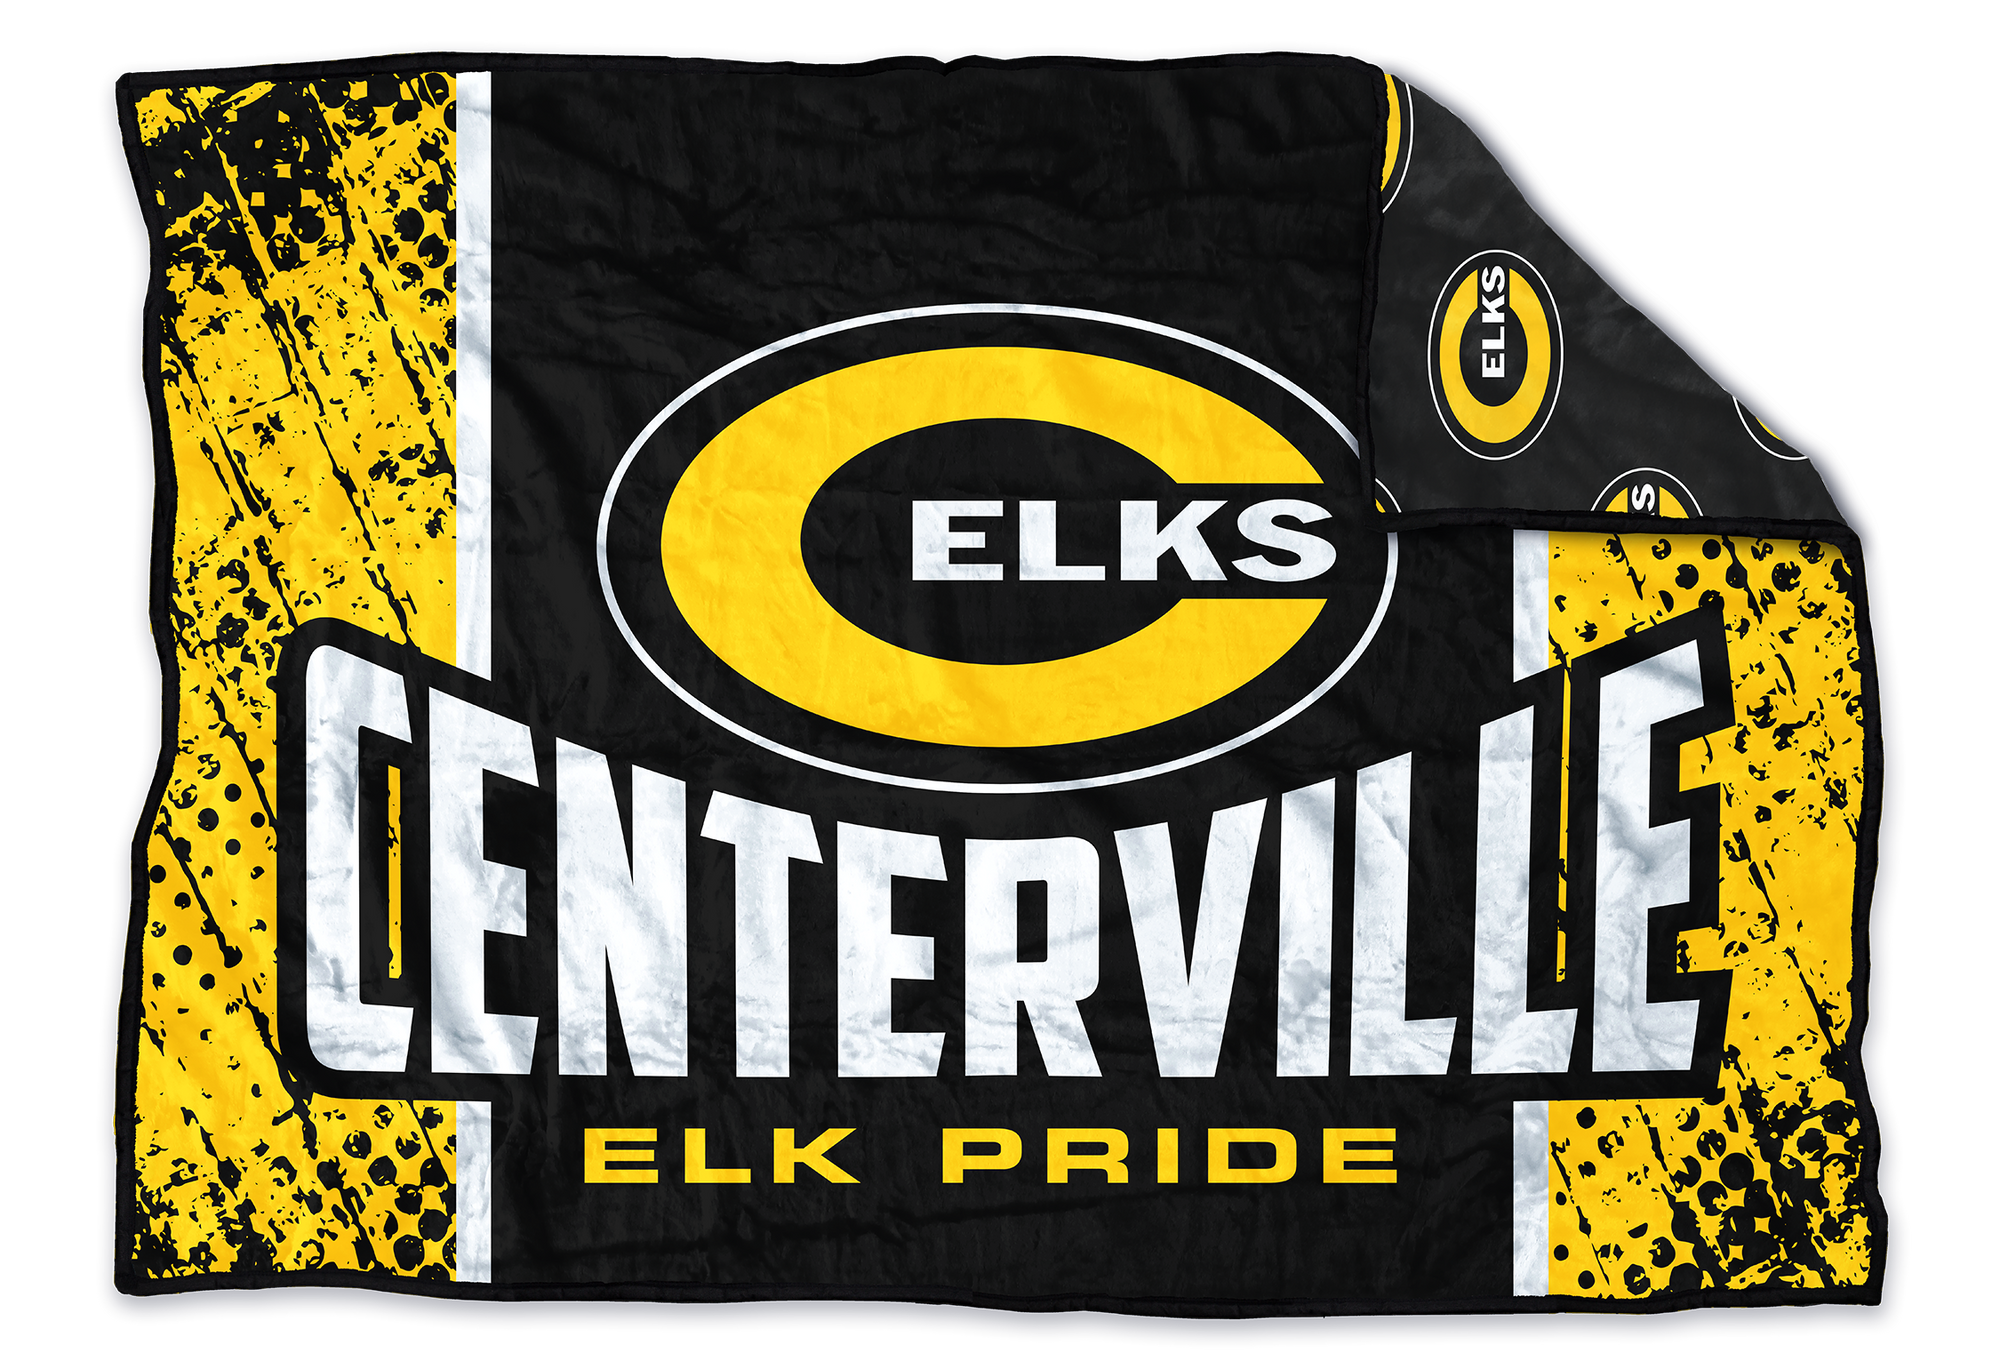 Centerville Elks